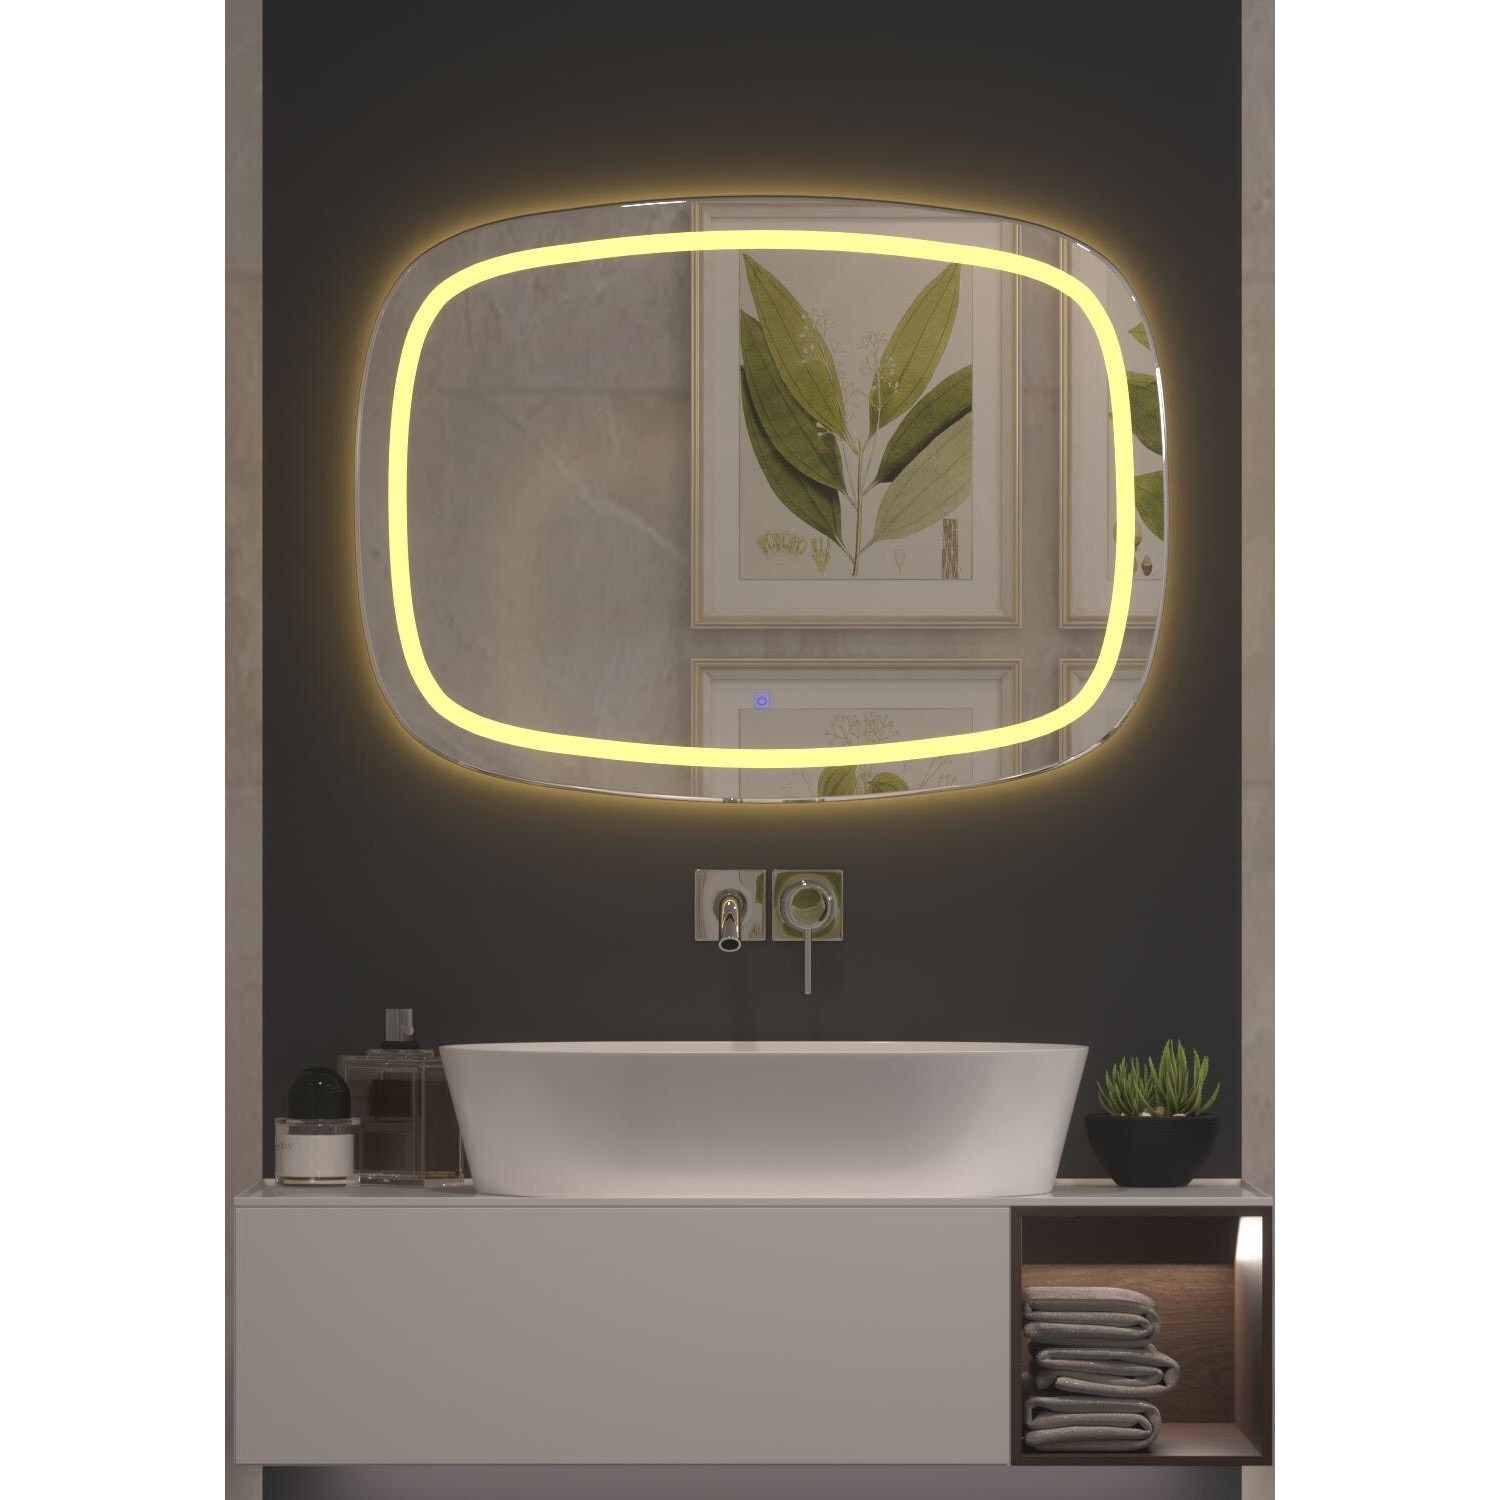 Gương soi đèn led phòng tắm GNT11 - Tích hợp đèn led và công tắc cảm ứng trên gương.